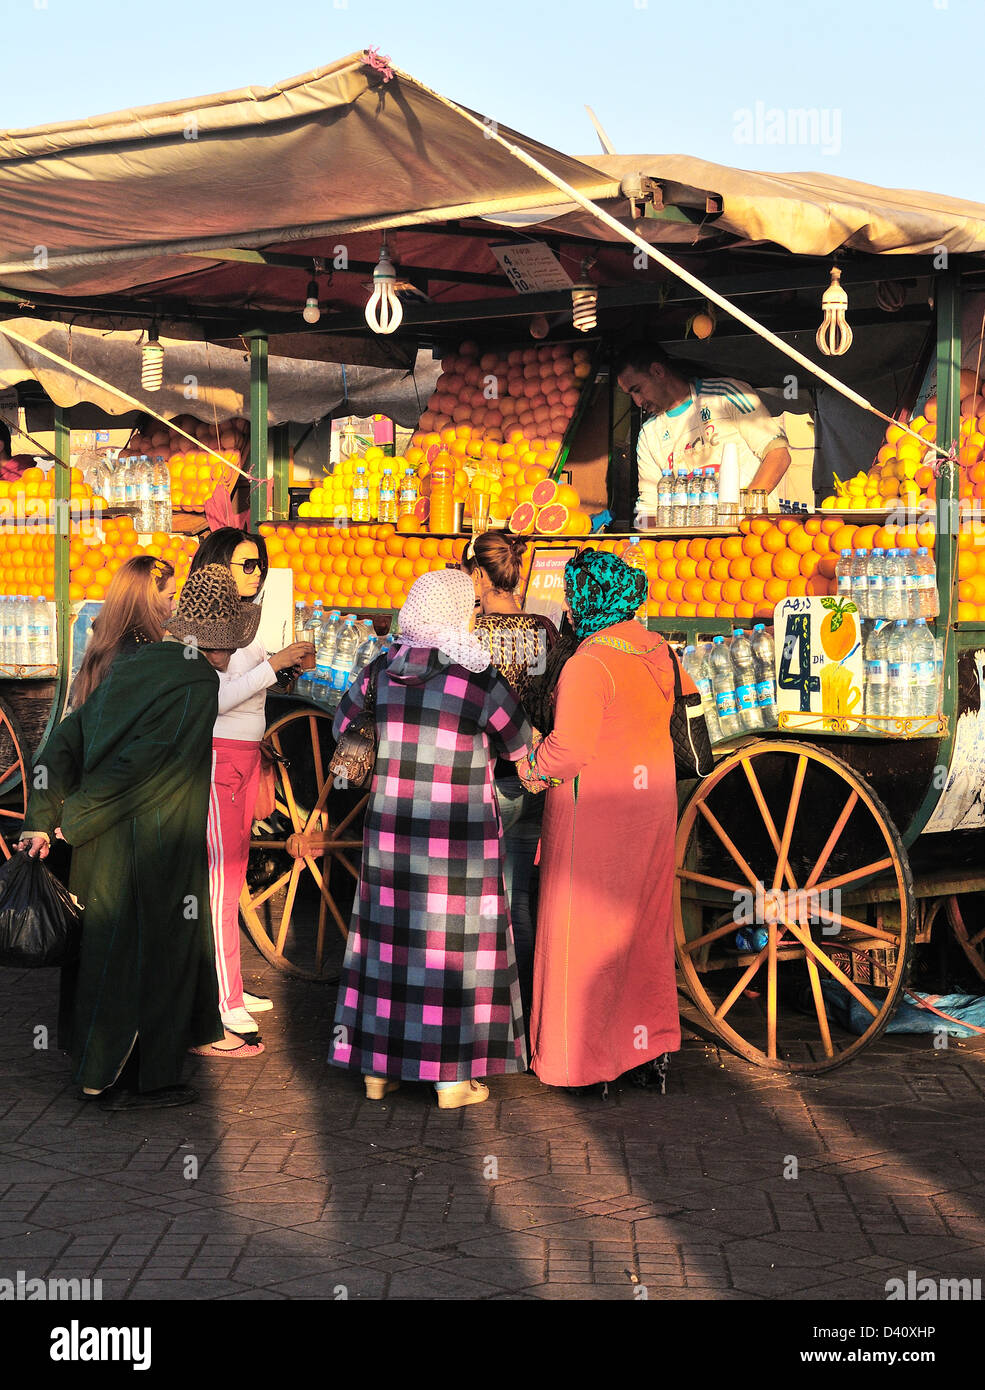 Einheimischen vor einem Orangensaft-Verkäufer in Jemaa El Fna, Marrakesch (Marrakech), Marokko Stockfoto